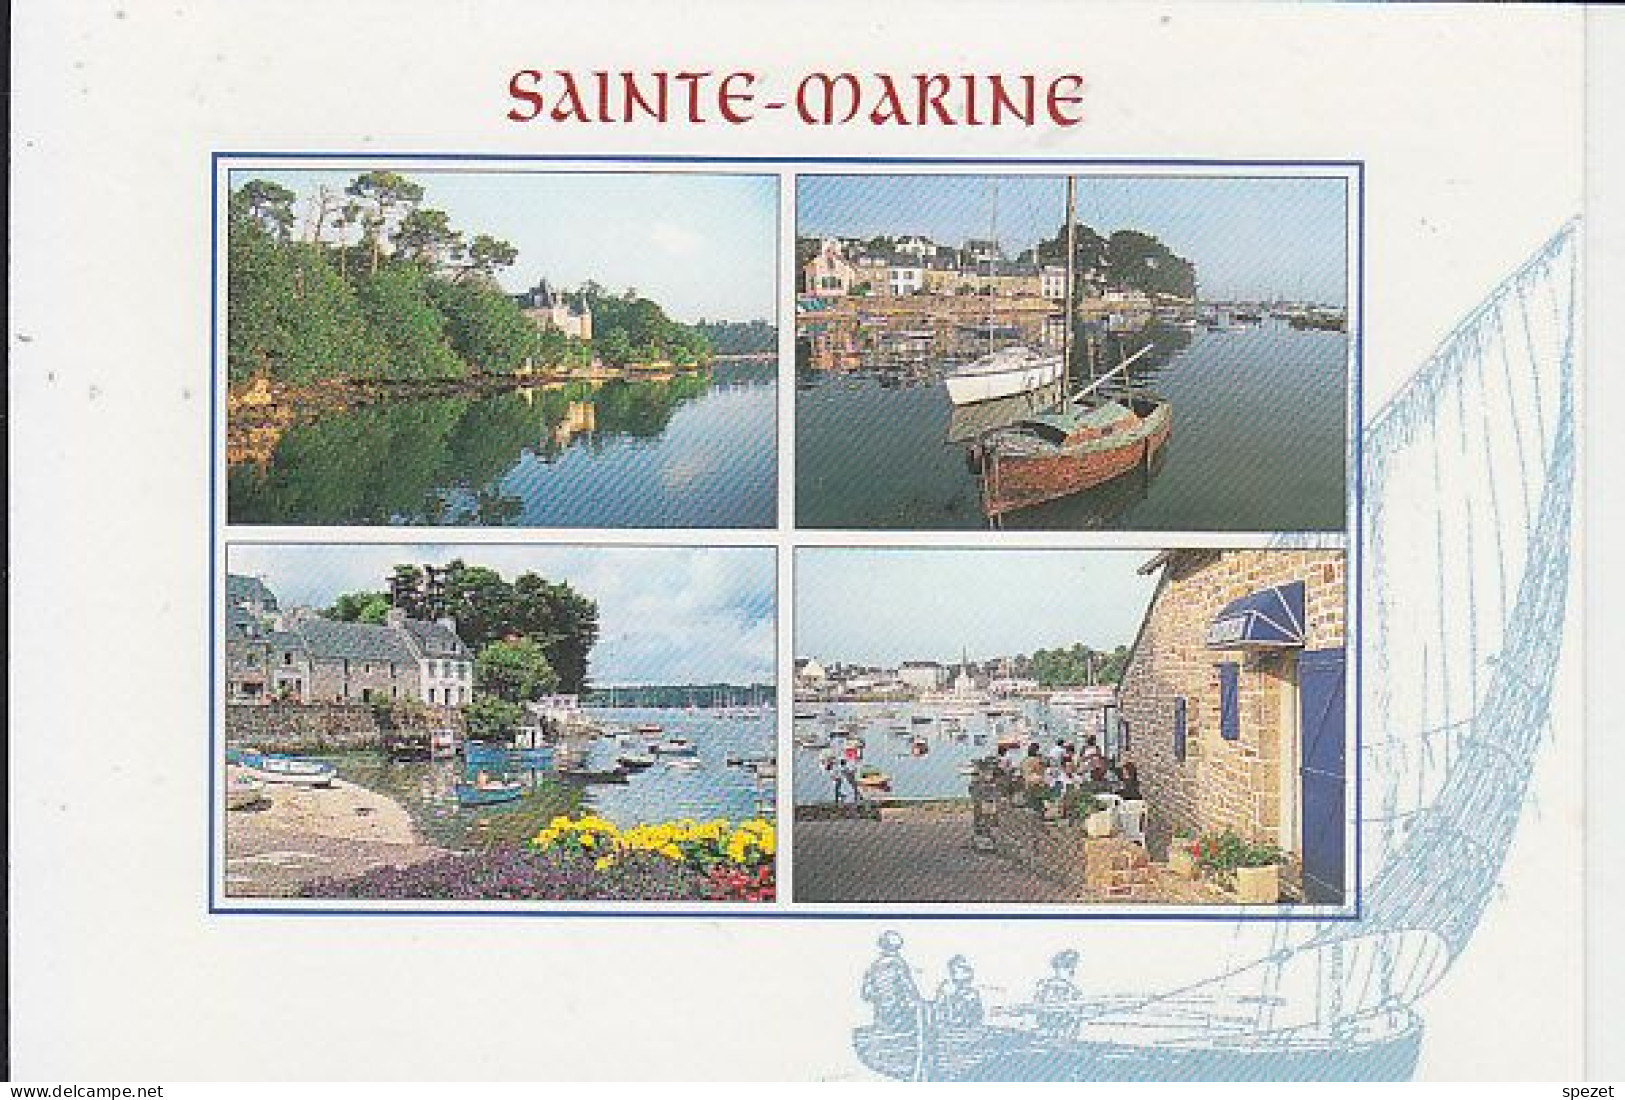 COMBRIT : Le Port - Combrit Ste-Marine